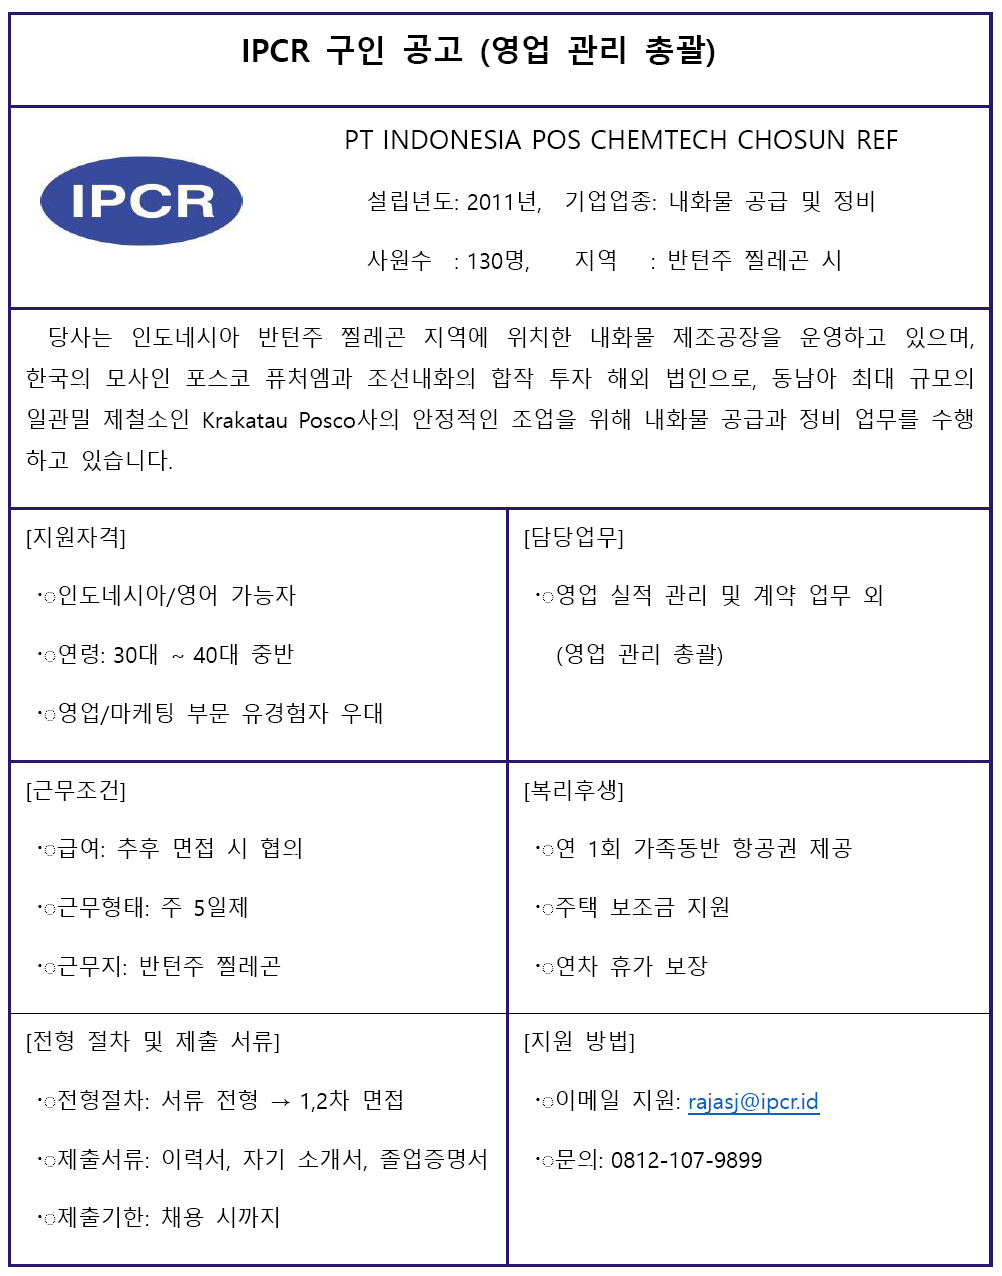 IPCR.png